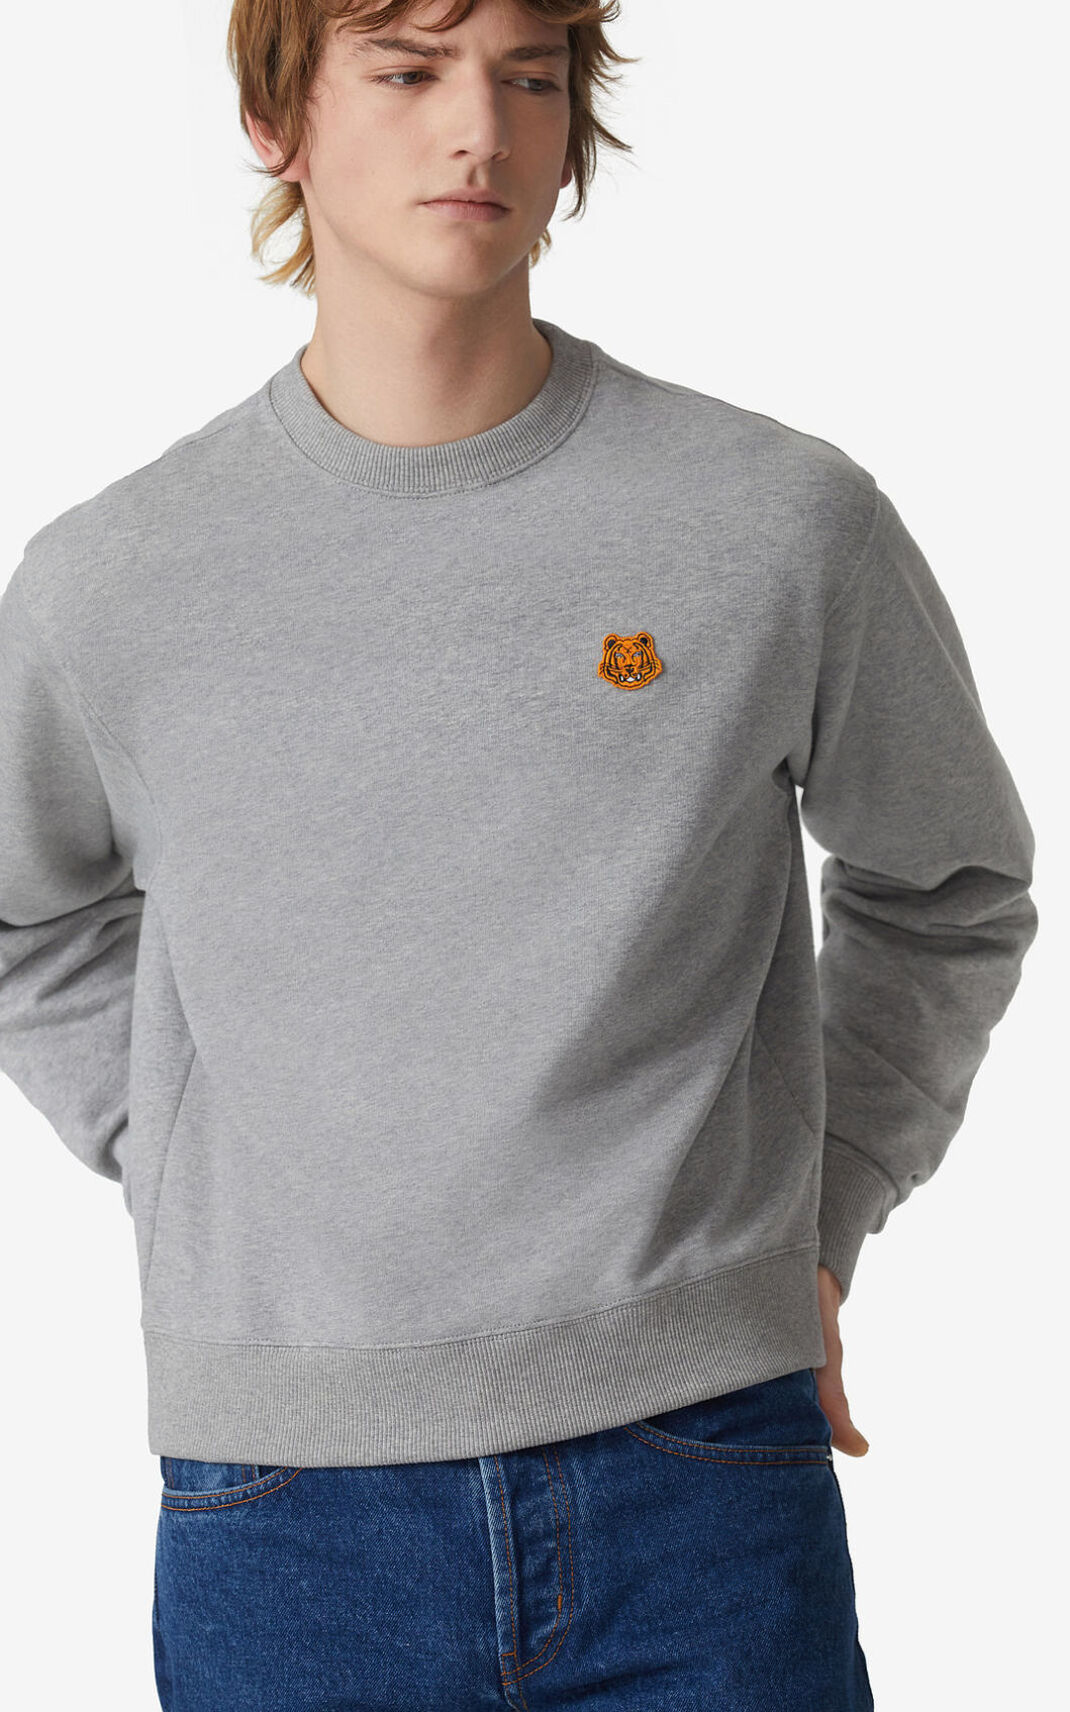 Kenzo Tiger Crest Sweatshirt Grey For Mens 3519CSWHK